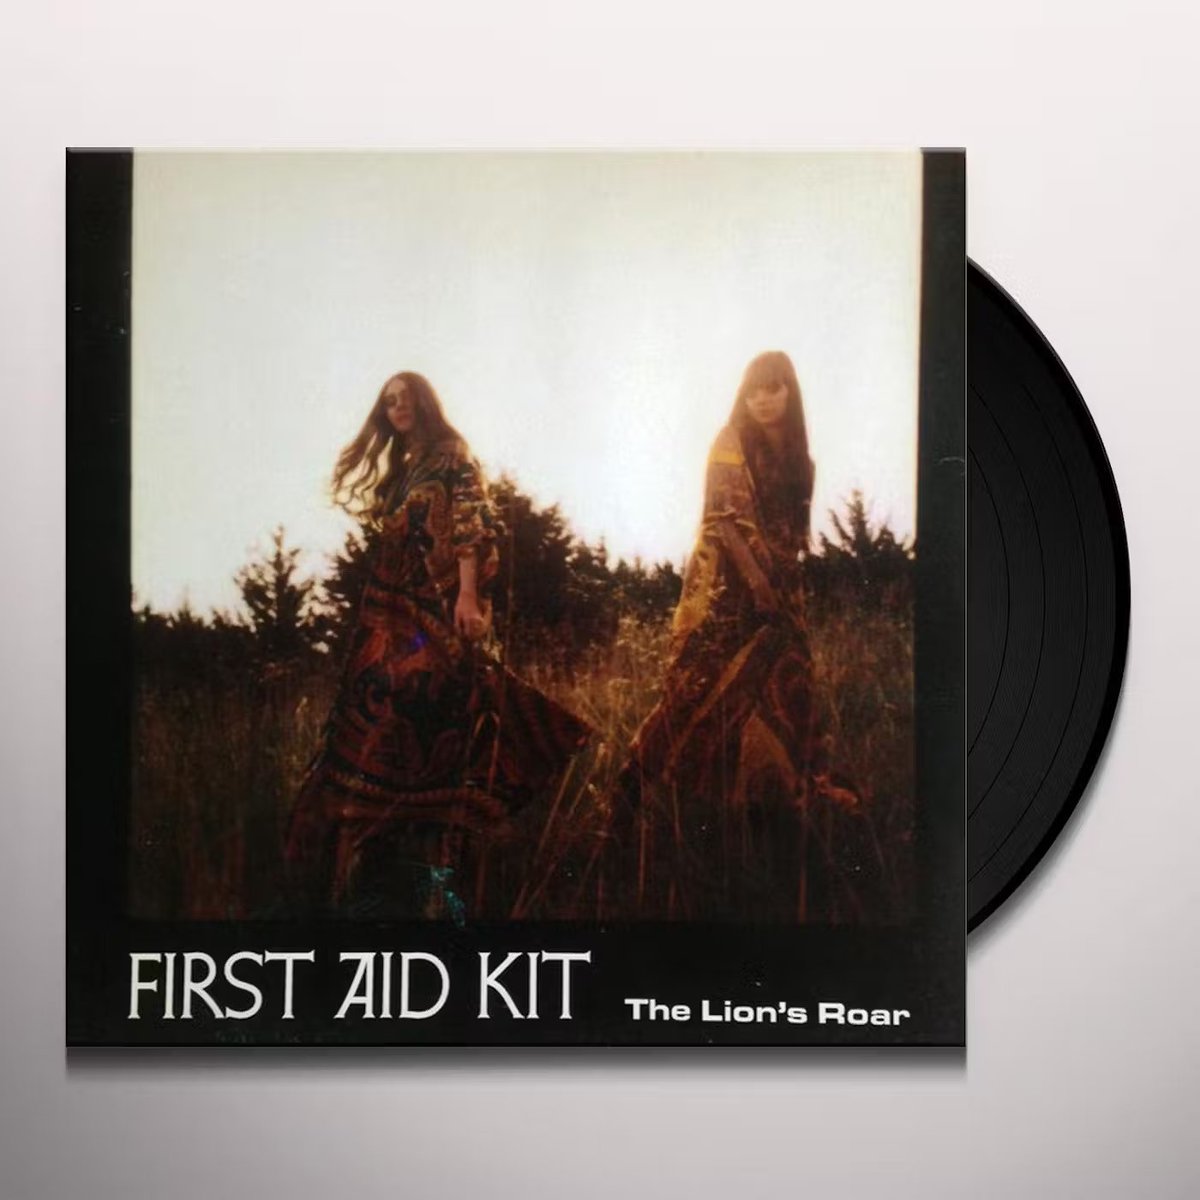 FIRST AID KIT - The Lion's Roar [Disco de Vinil]

Por: R$184,65

amzn.to/3Tx19kH